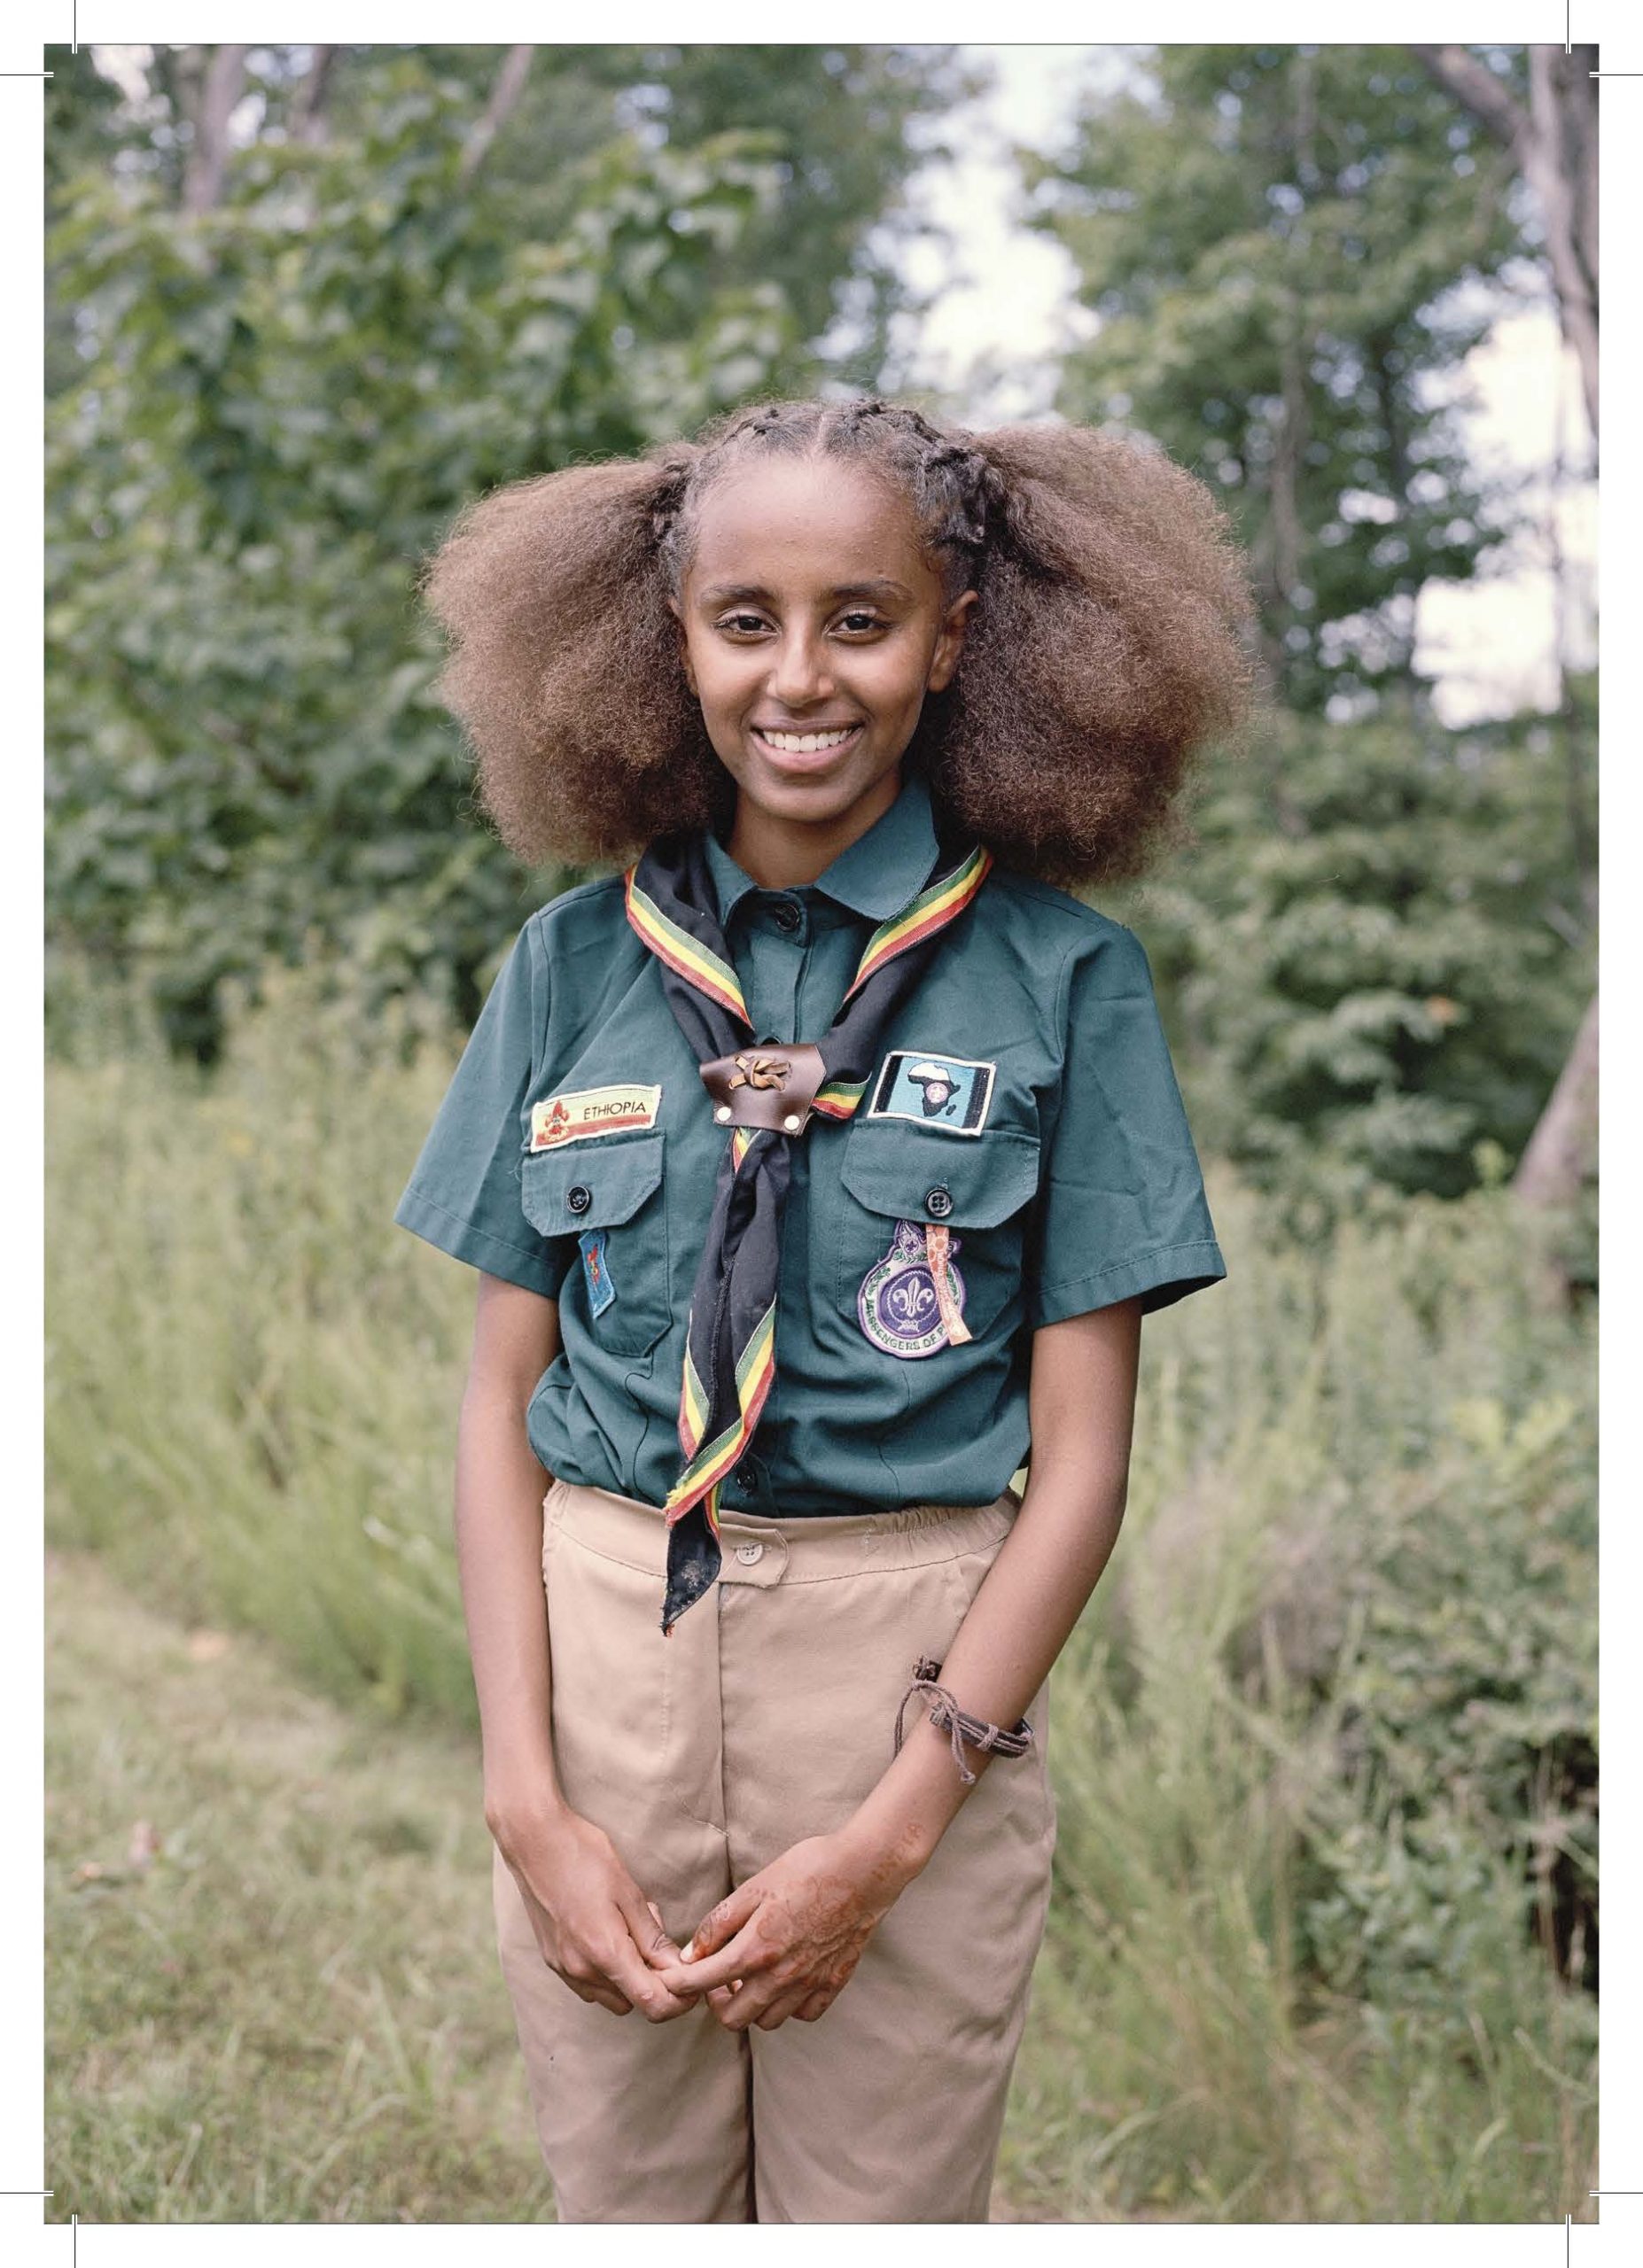 Foto: Juliane Herrmann, »Blen Biruk, Ethiopia, 2019« from the series »Attitude«